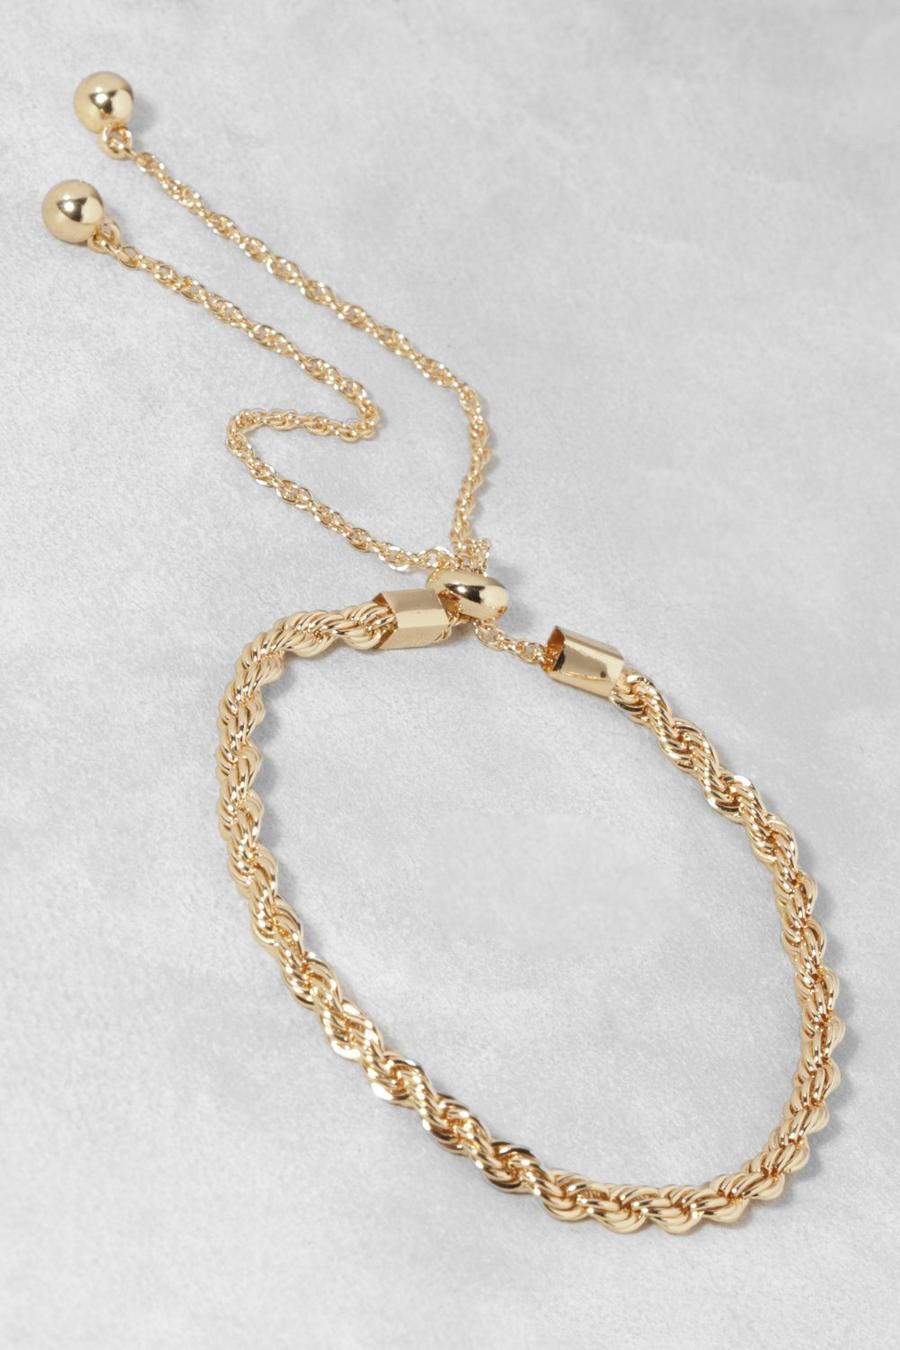 Bralette con alamar, nudo y cuerda pulida, Gold metálicos